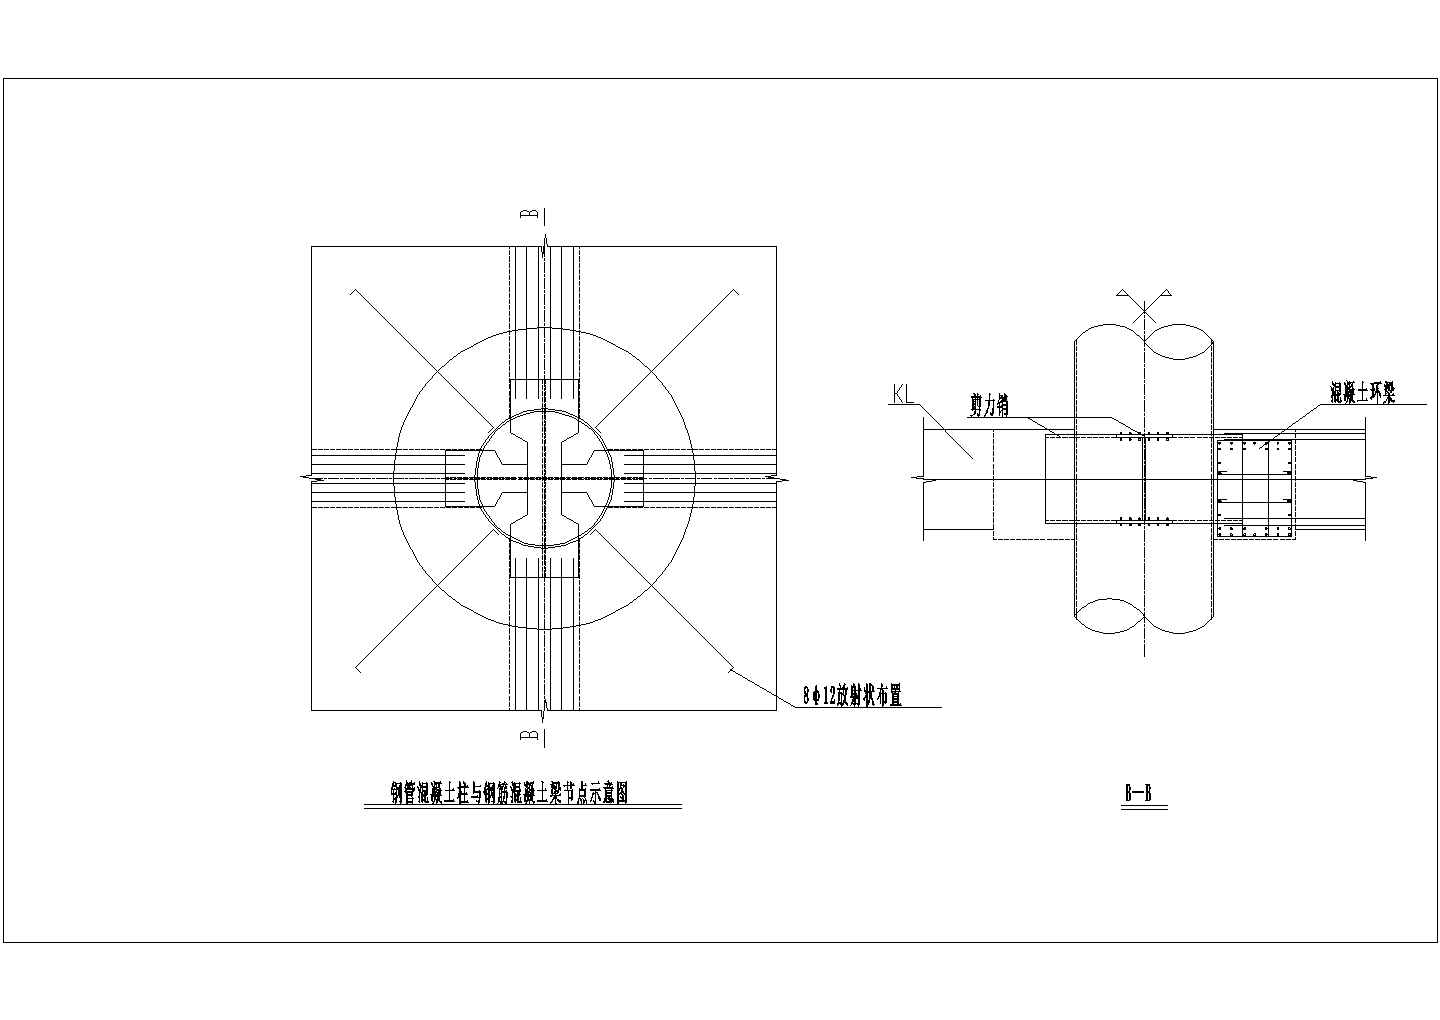 钢管混凝土柱与钢筋混凝土梁节点示意图CAD图纸设计